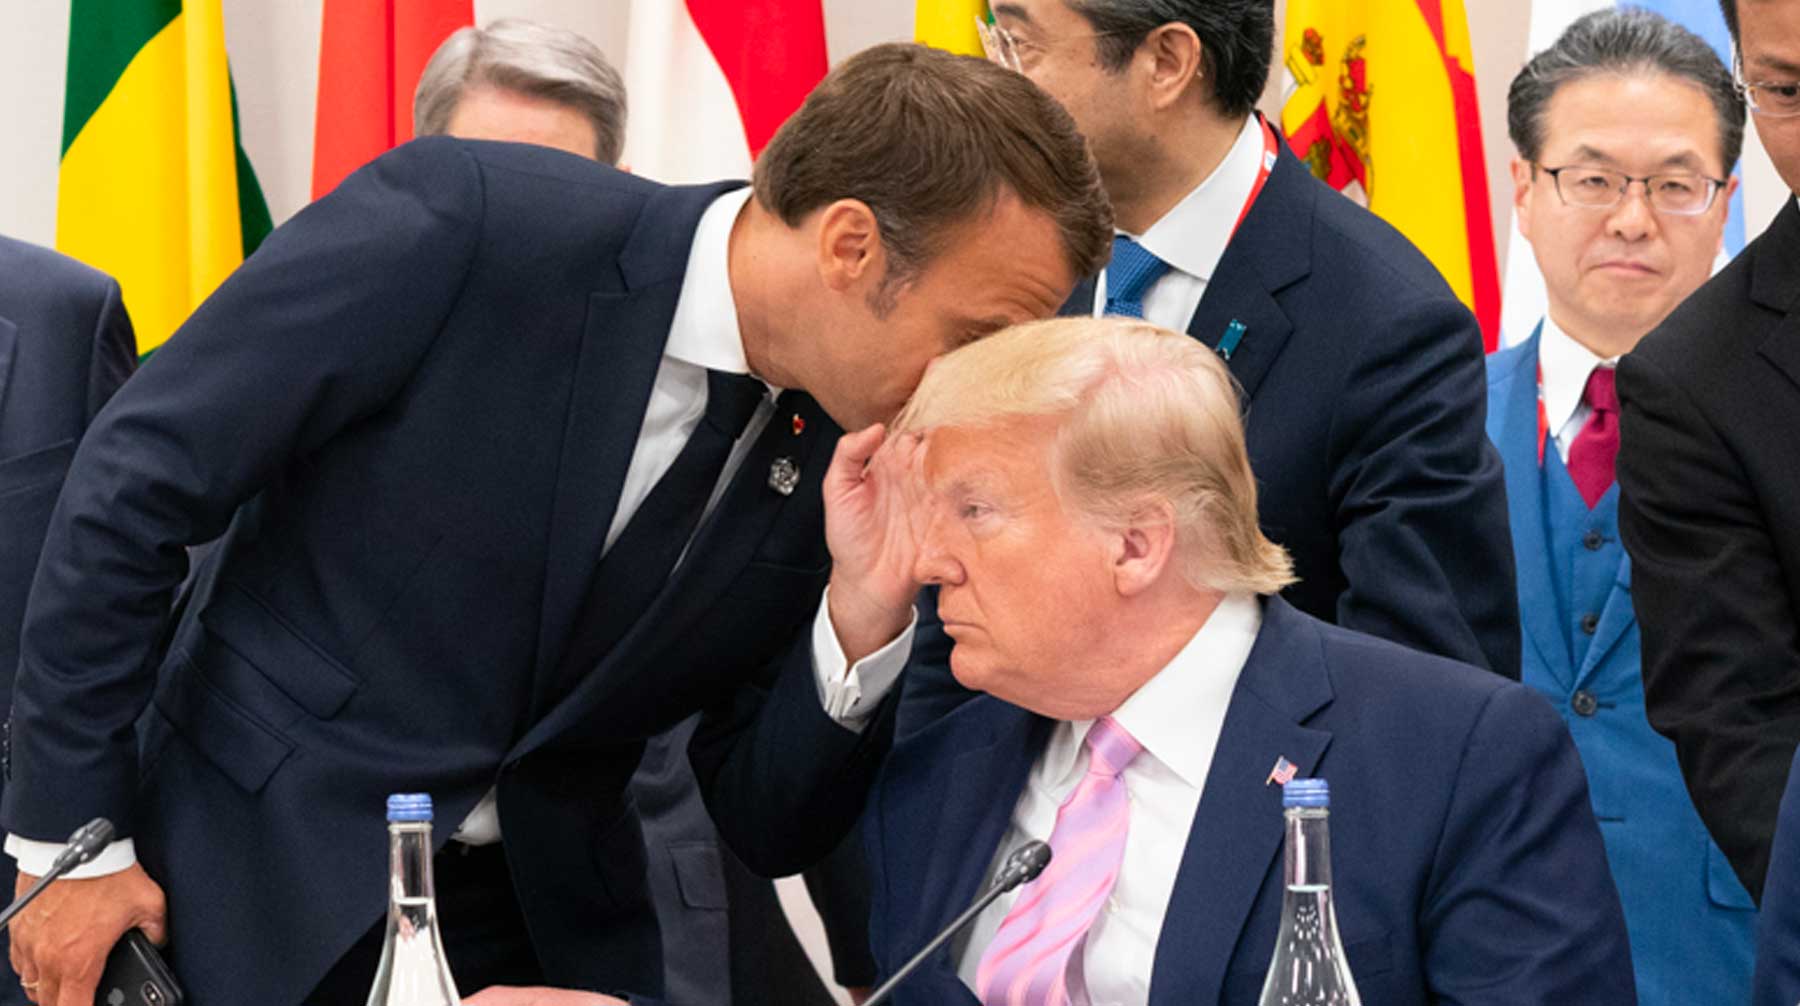 Планируется, что в эти выходные президент США обсудит с другими лидерами участие Москвы в мероприятиях «Большой семерки» Фото: © GLOBAL LOOK press / White House